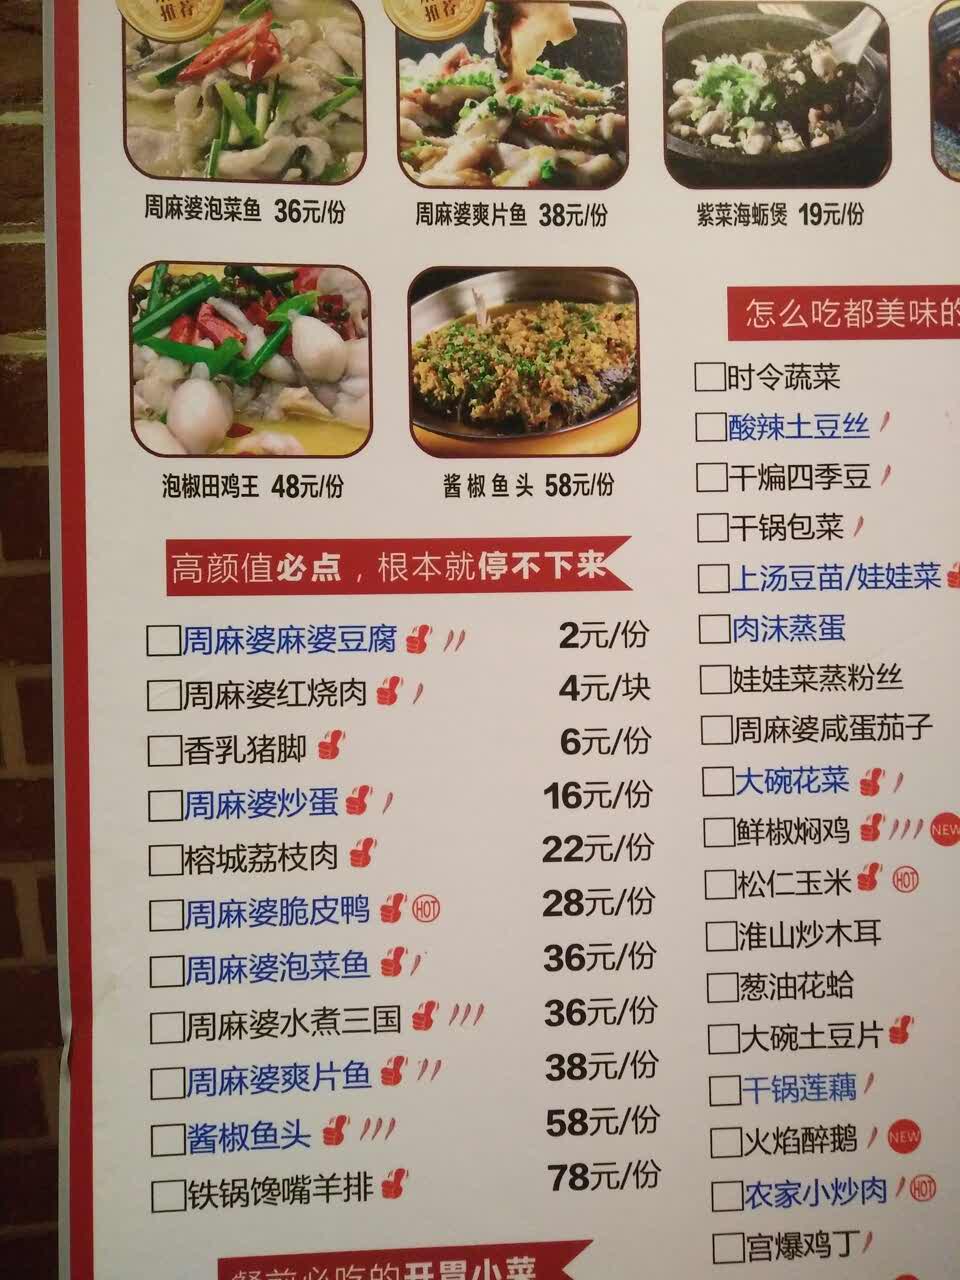 但是挺好吃的,和图片上一样,泡菜鱼大份还很下饭,麻婆豆腐才2元但份量